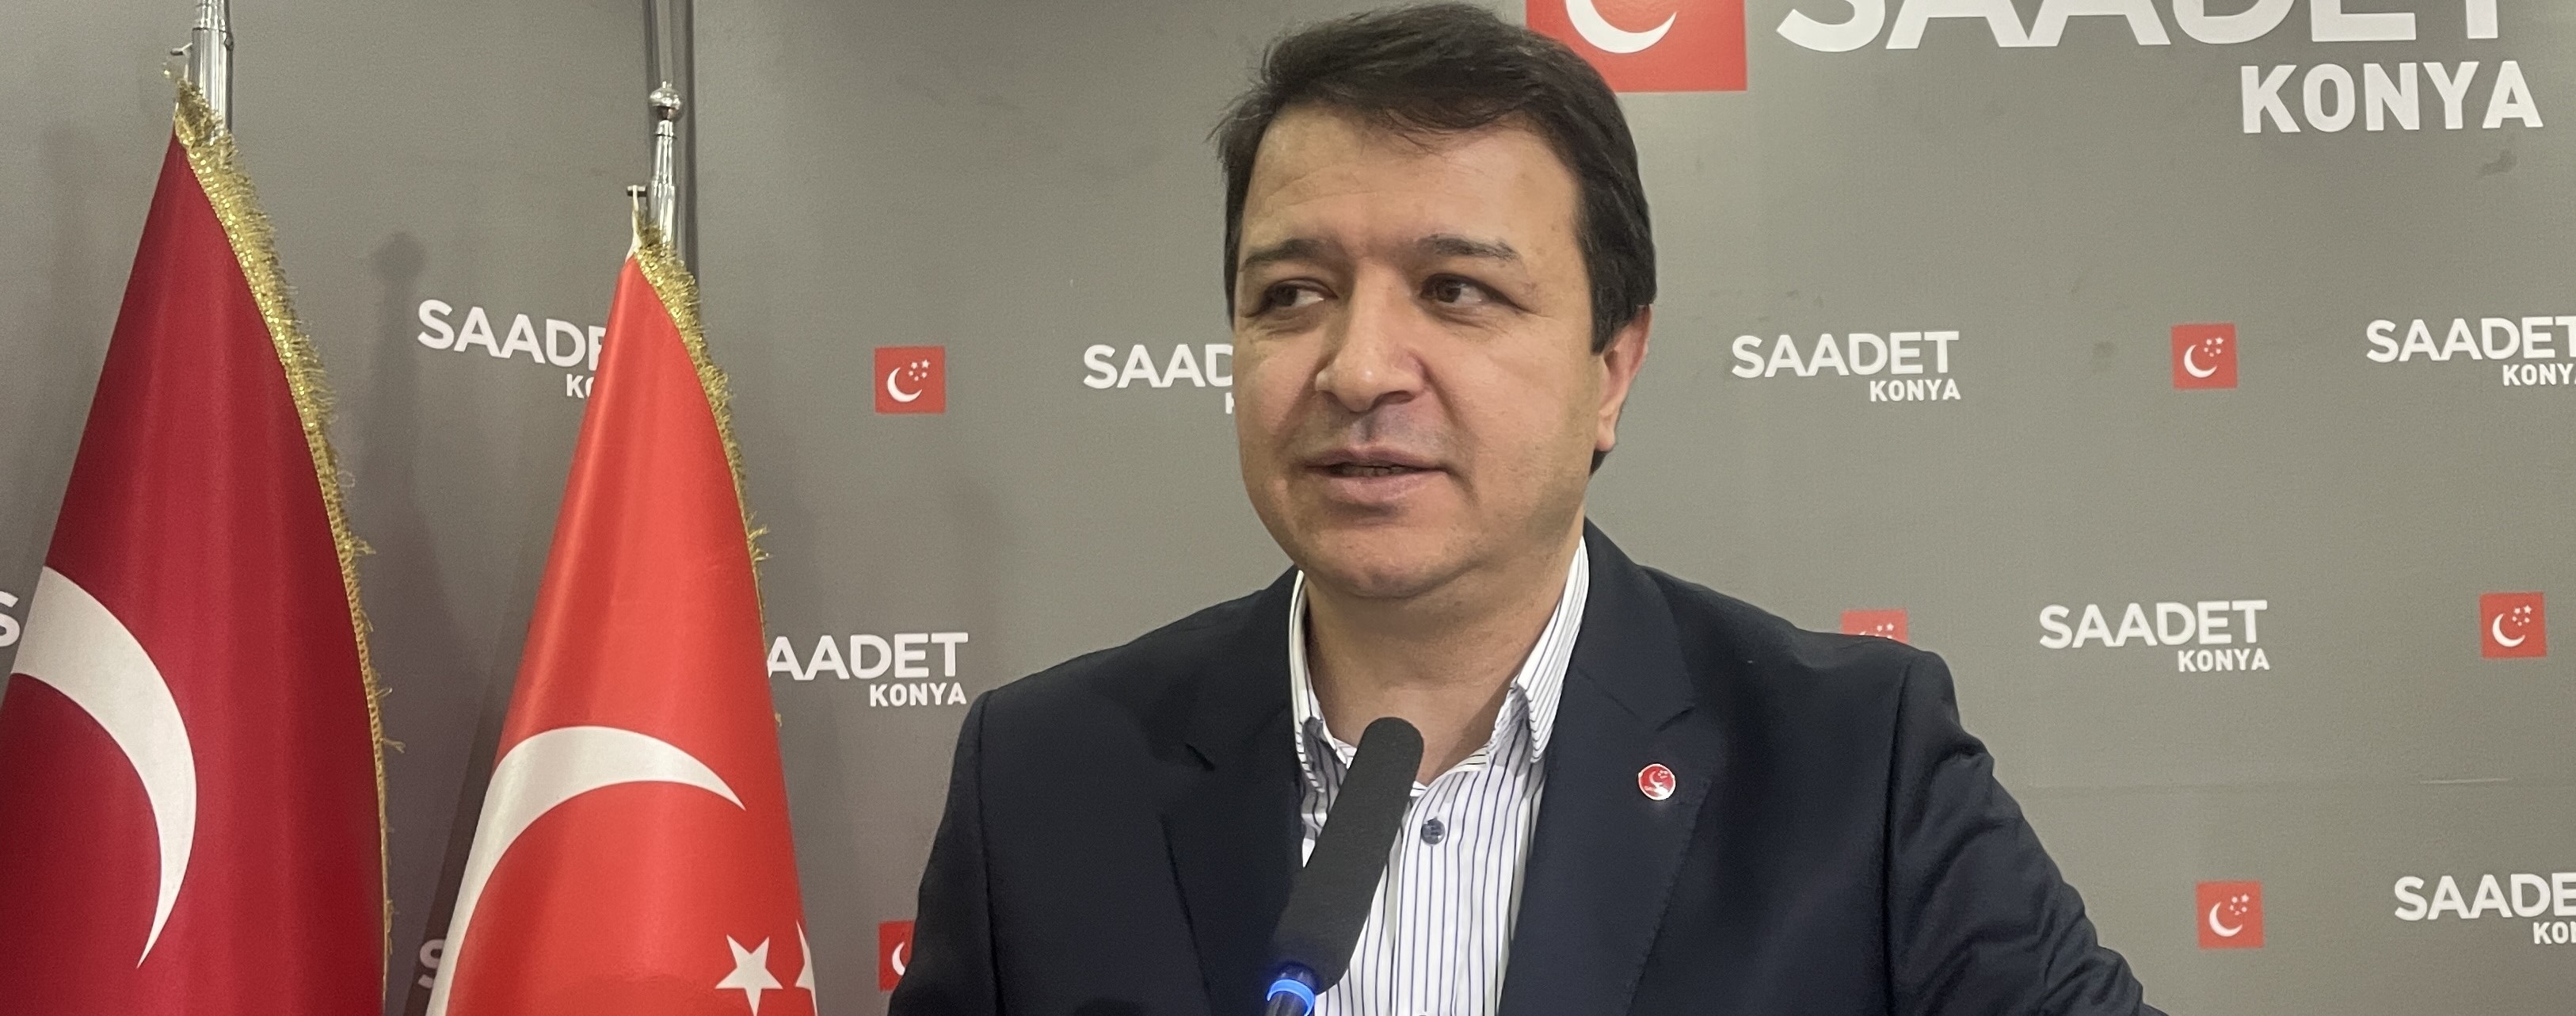 Saadet Partisi Genel Başkan Yardımcısı Arıkan, Konya'da: Türkiye öncülük etmeli